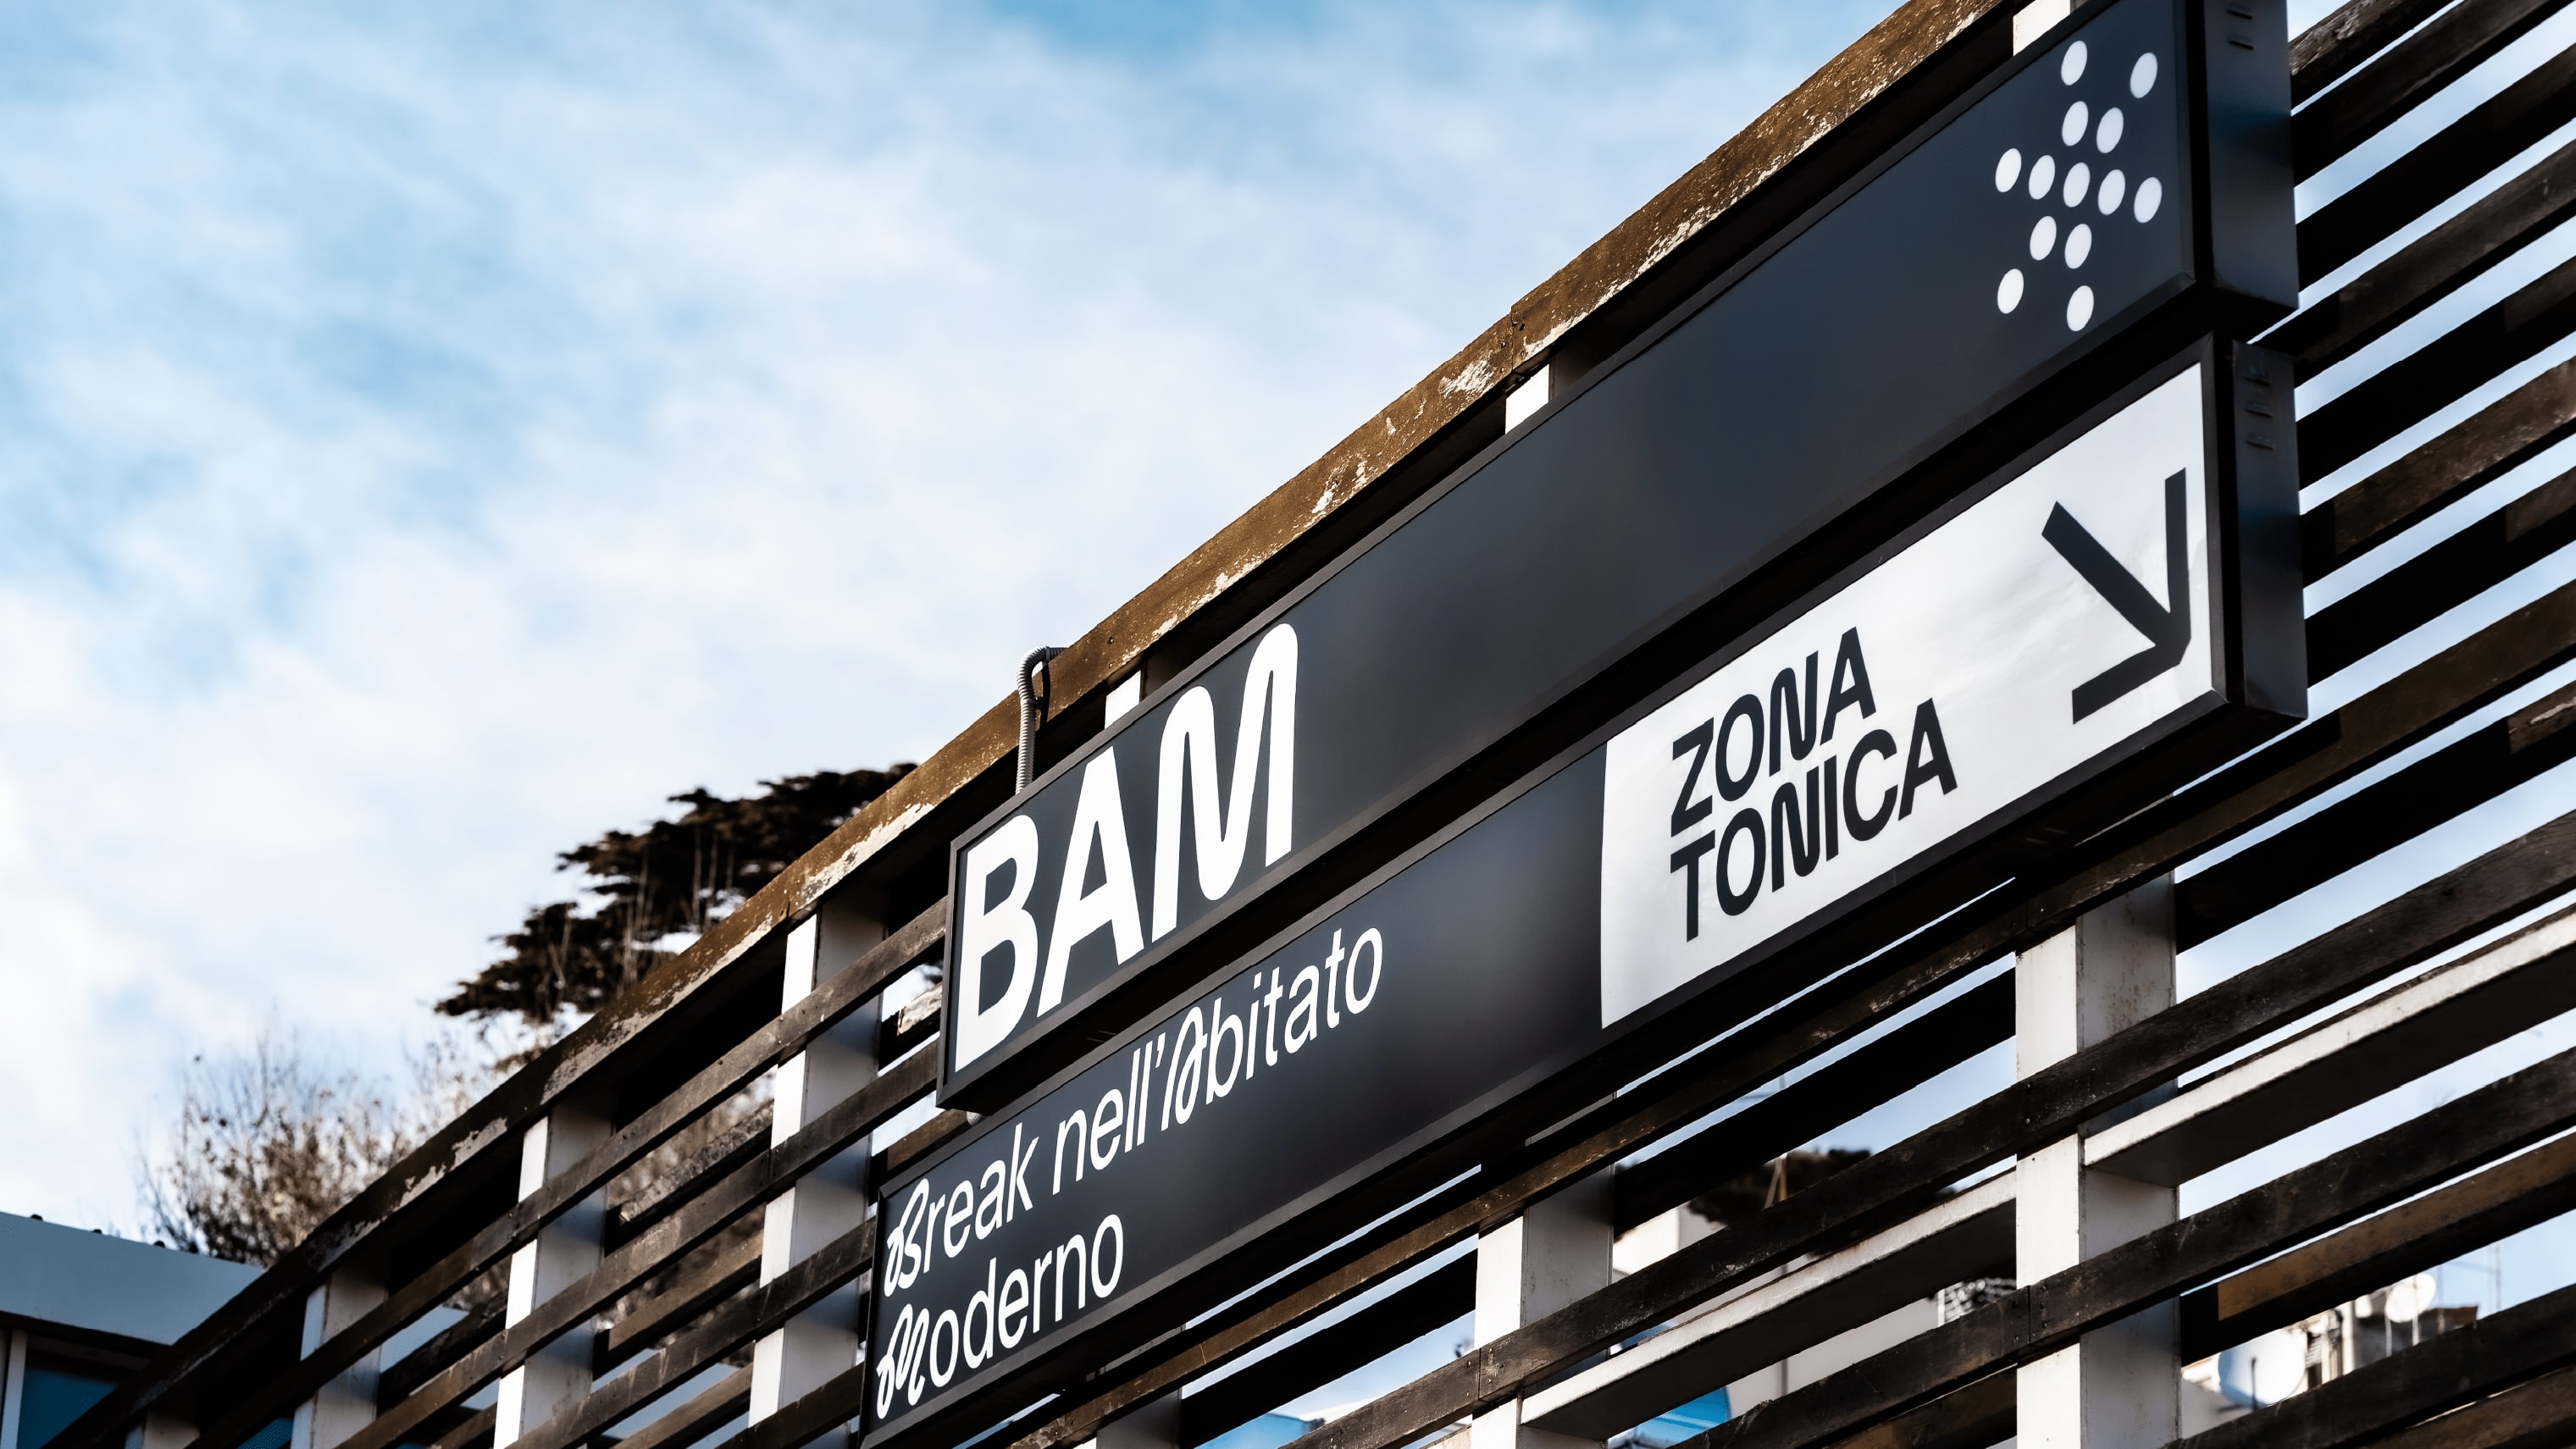 Brand Design for BAM – Break nell’Abitato Moderno